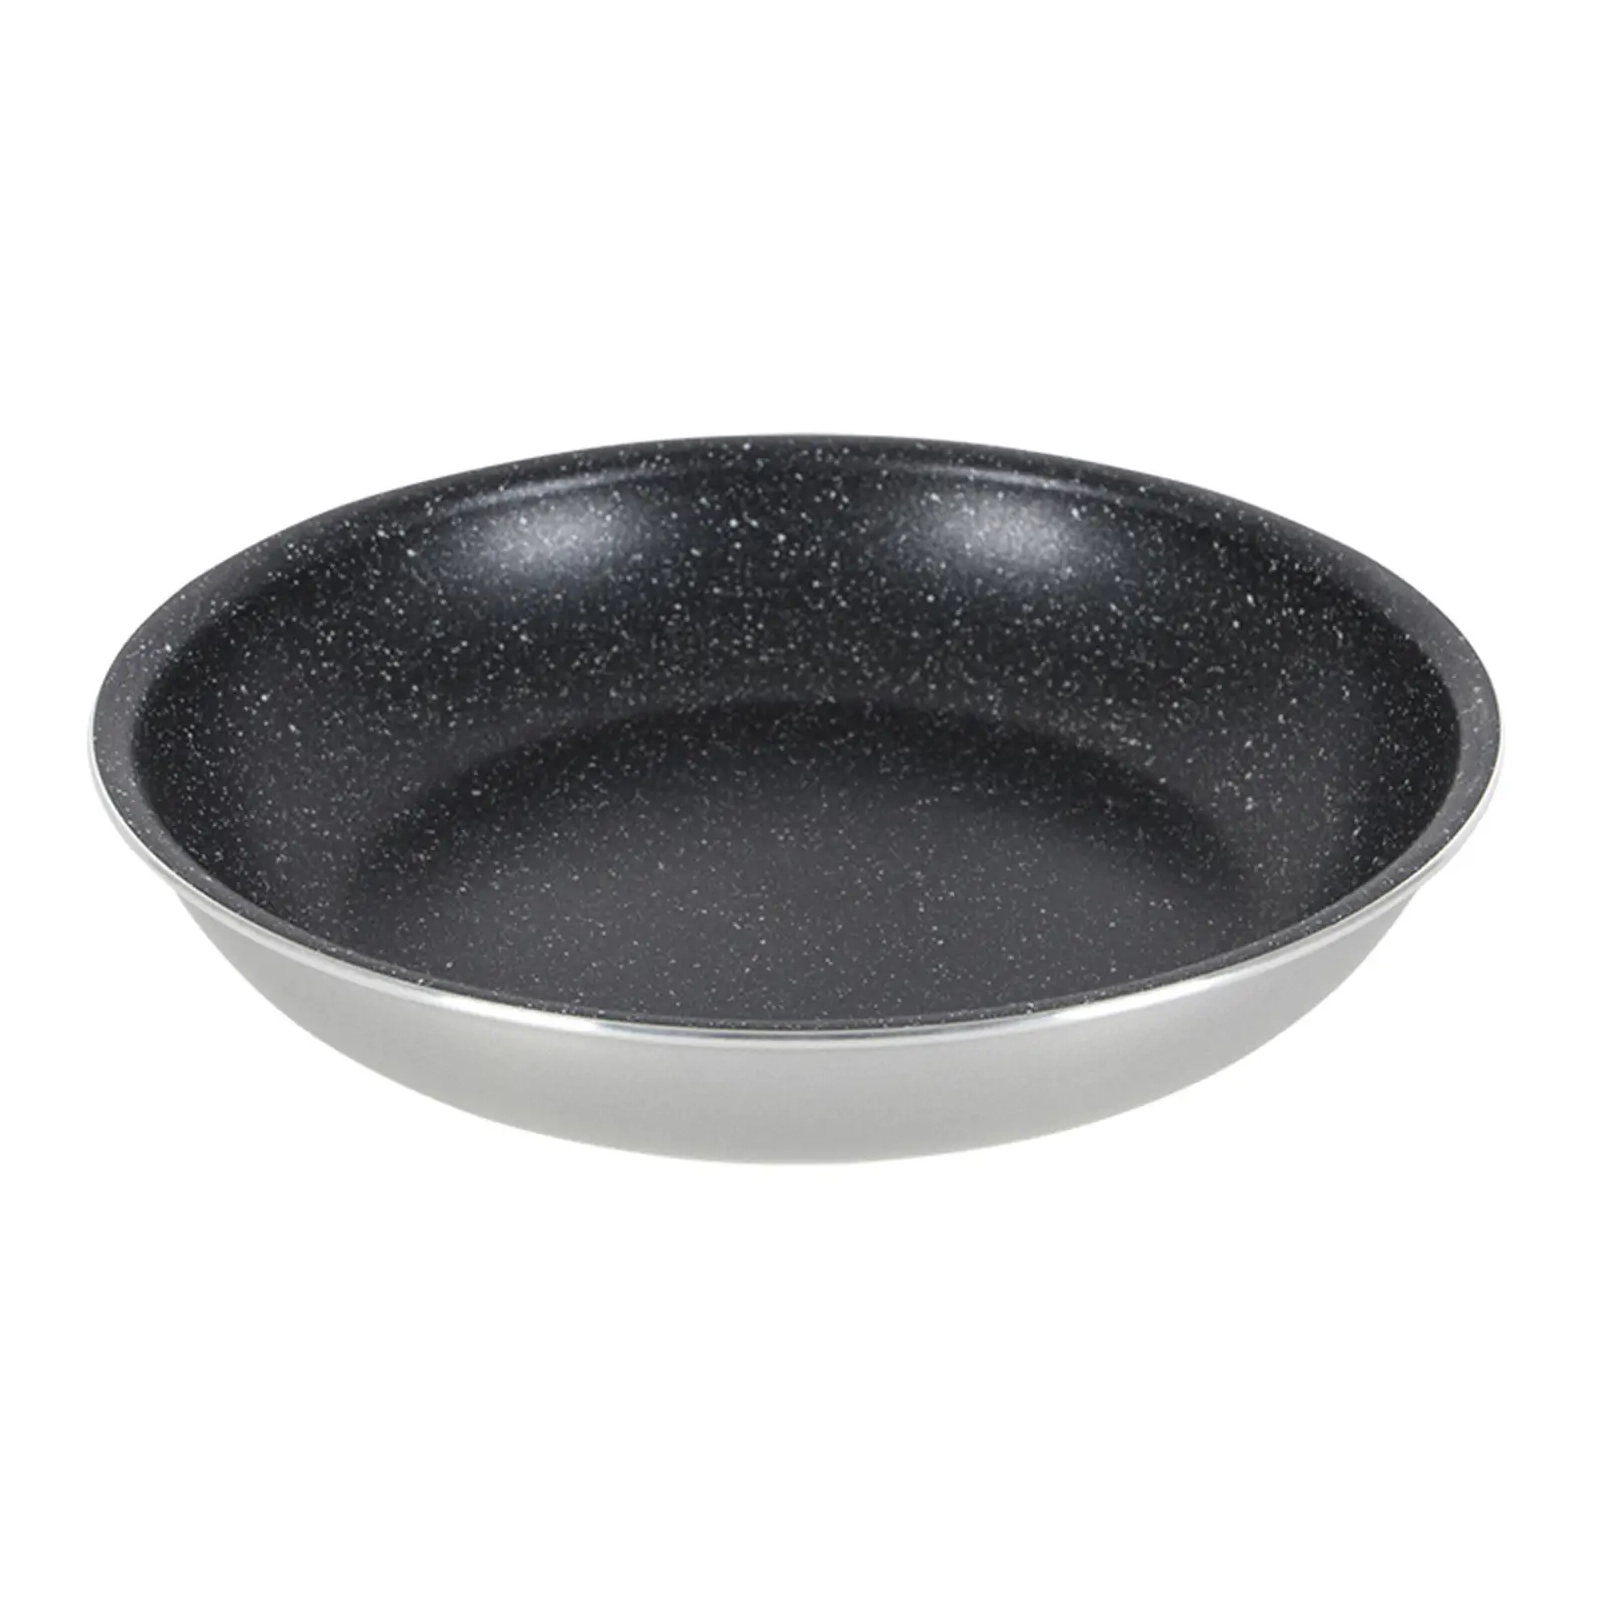 Набор посуды Gimex Cookware Set induction 8 предметів Dark Blue (6977228) изображение 7